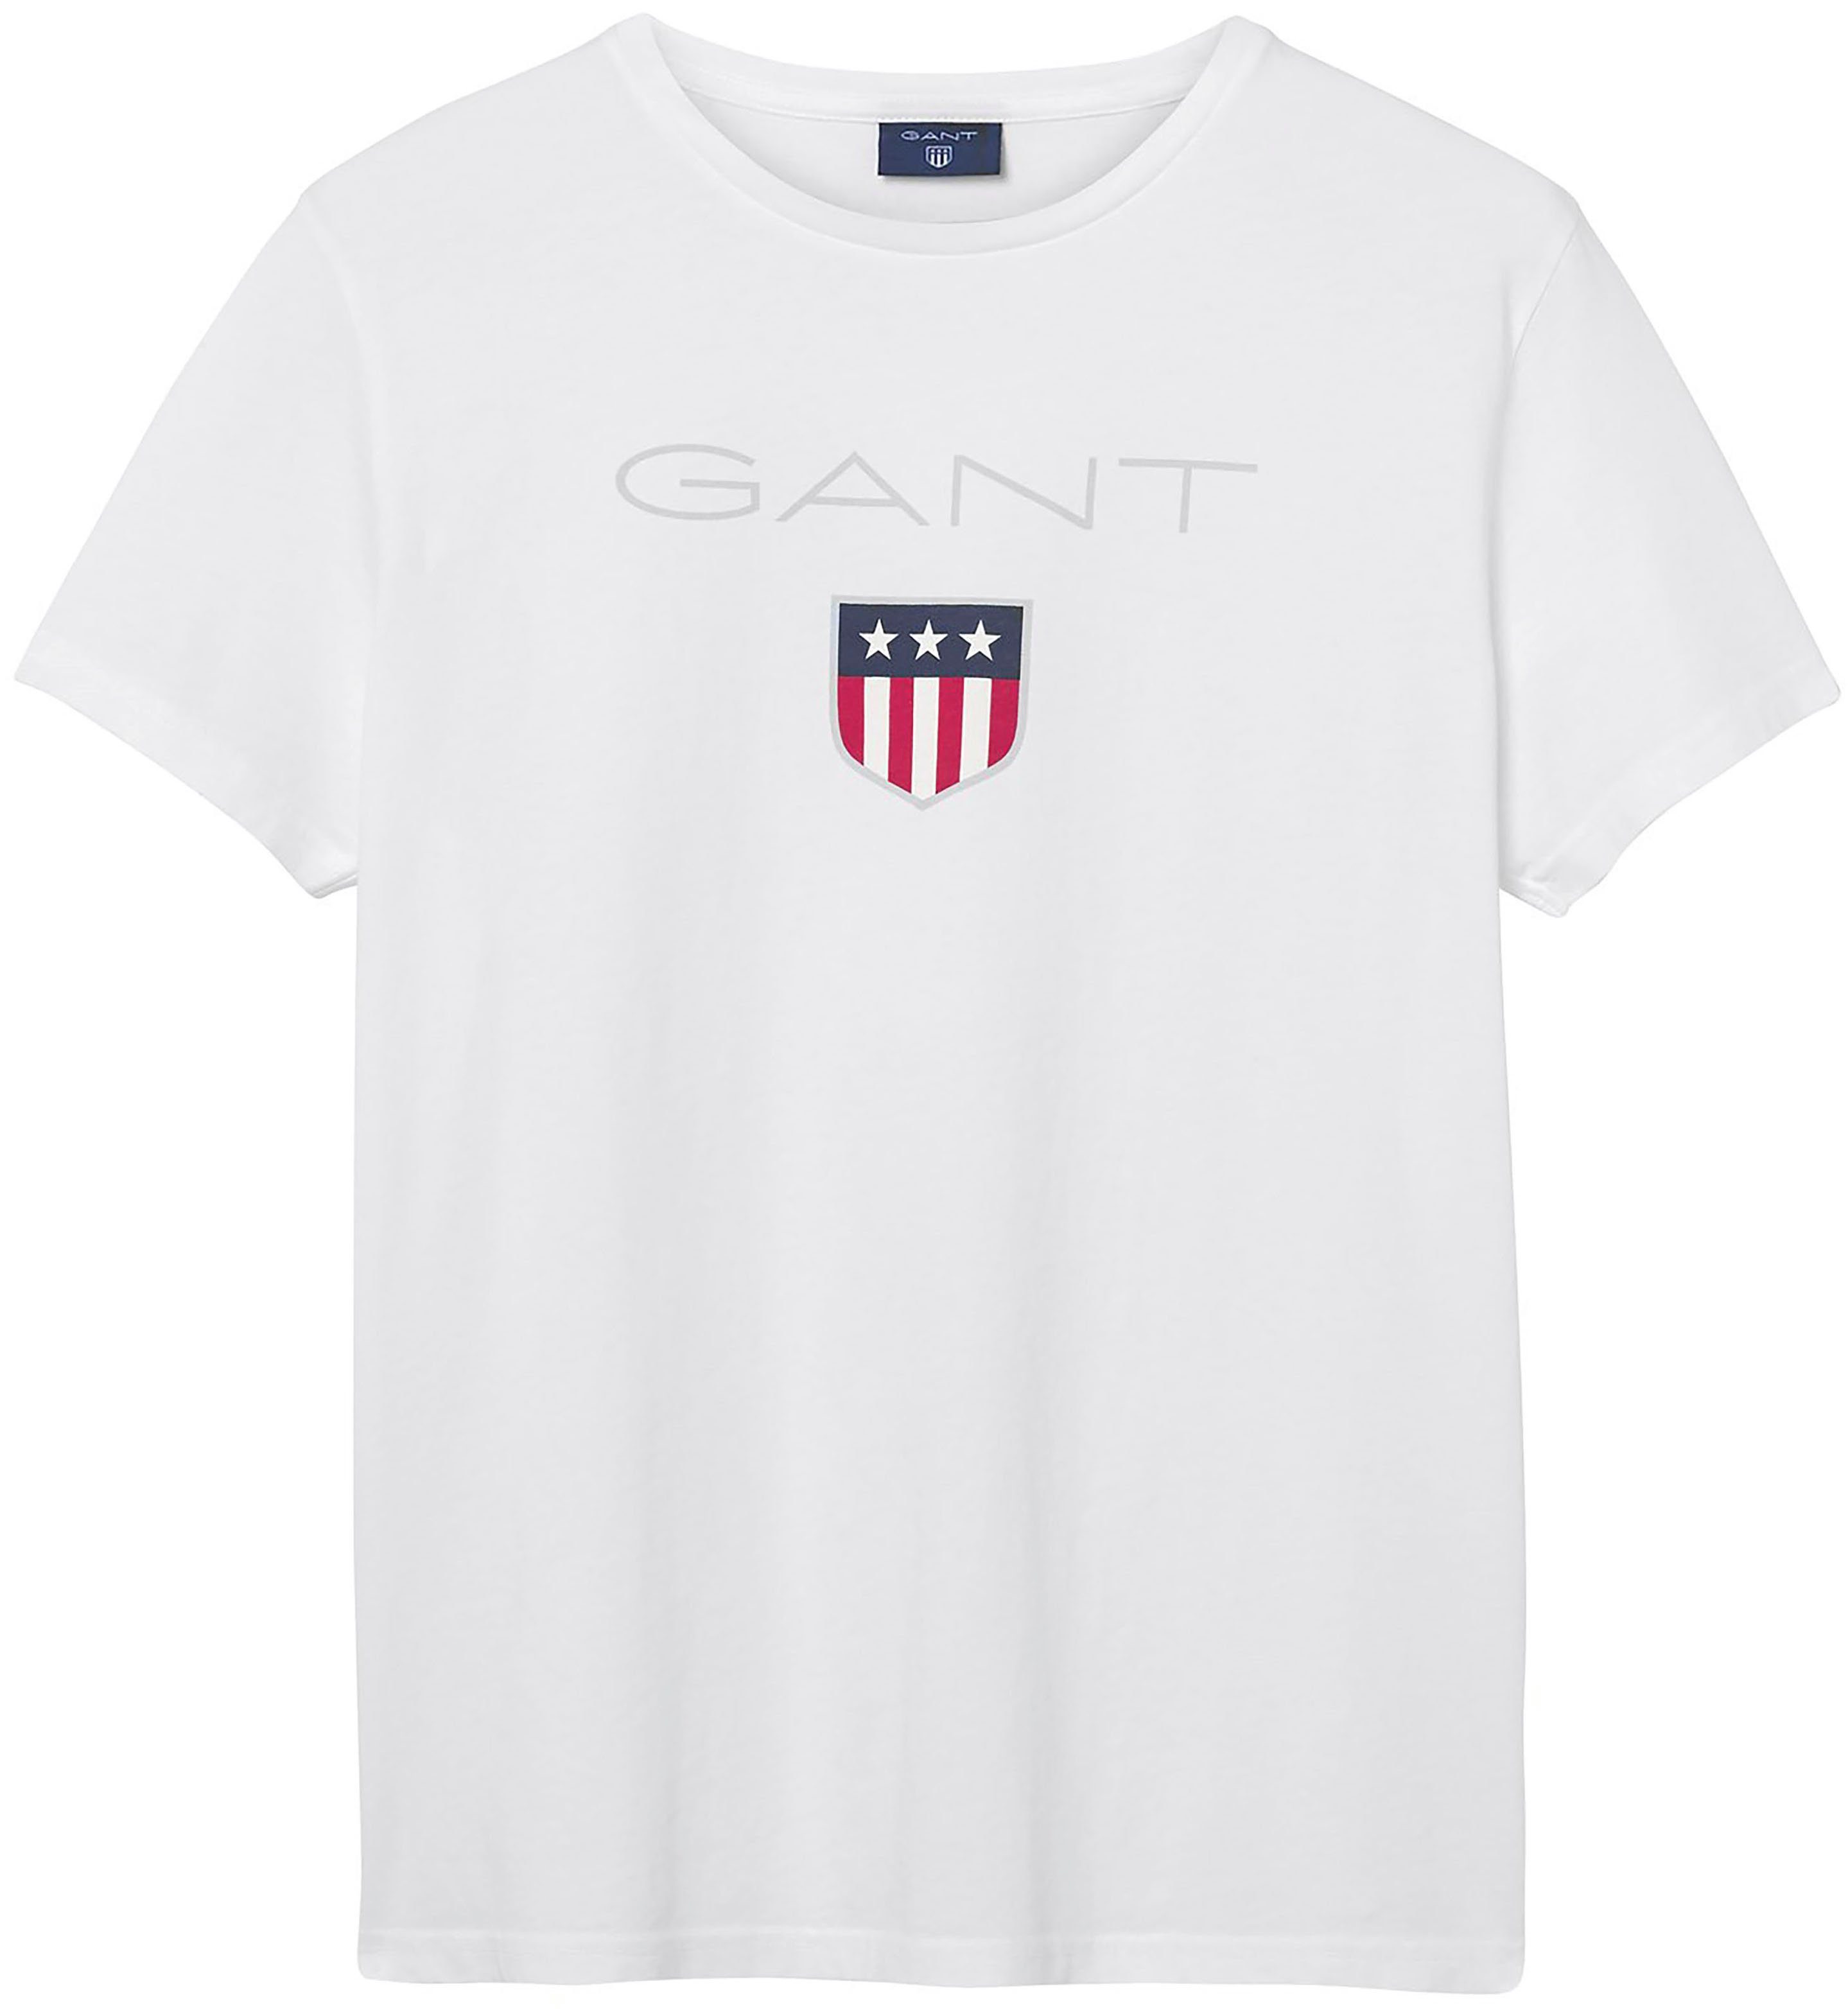 Großer Gant T-Shirt SHIELD white Markendruck